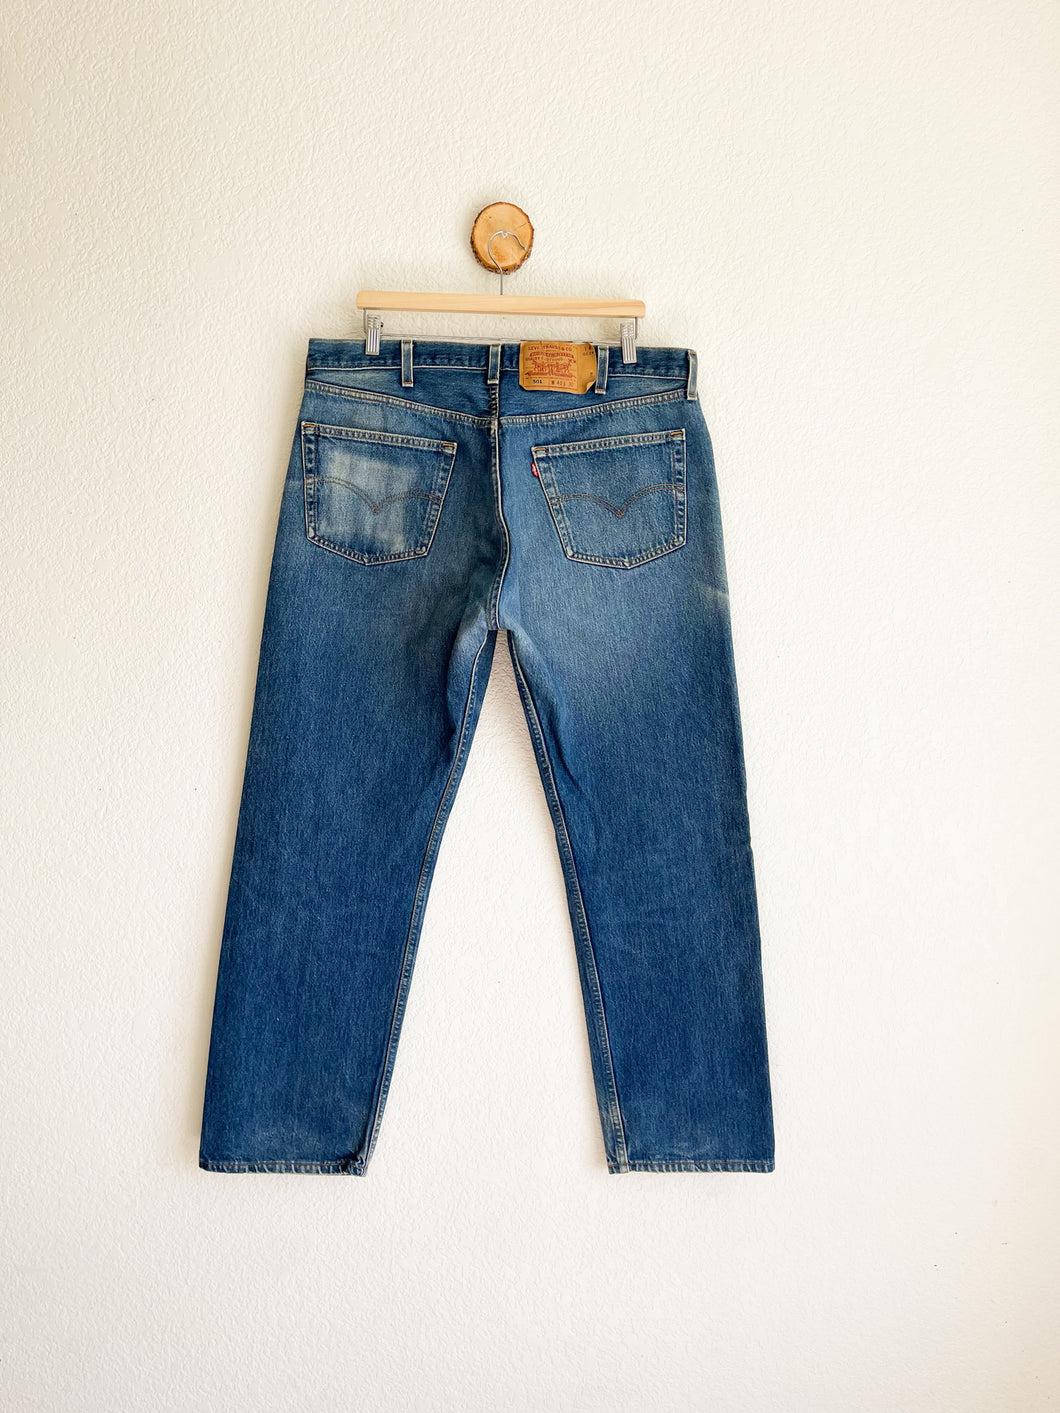 Vintage Levi's 501 Jeans - 38